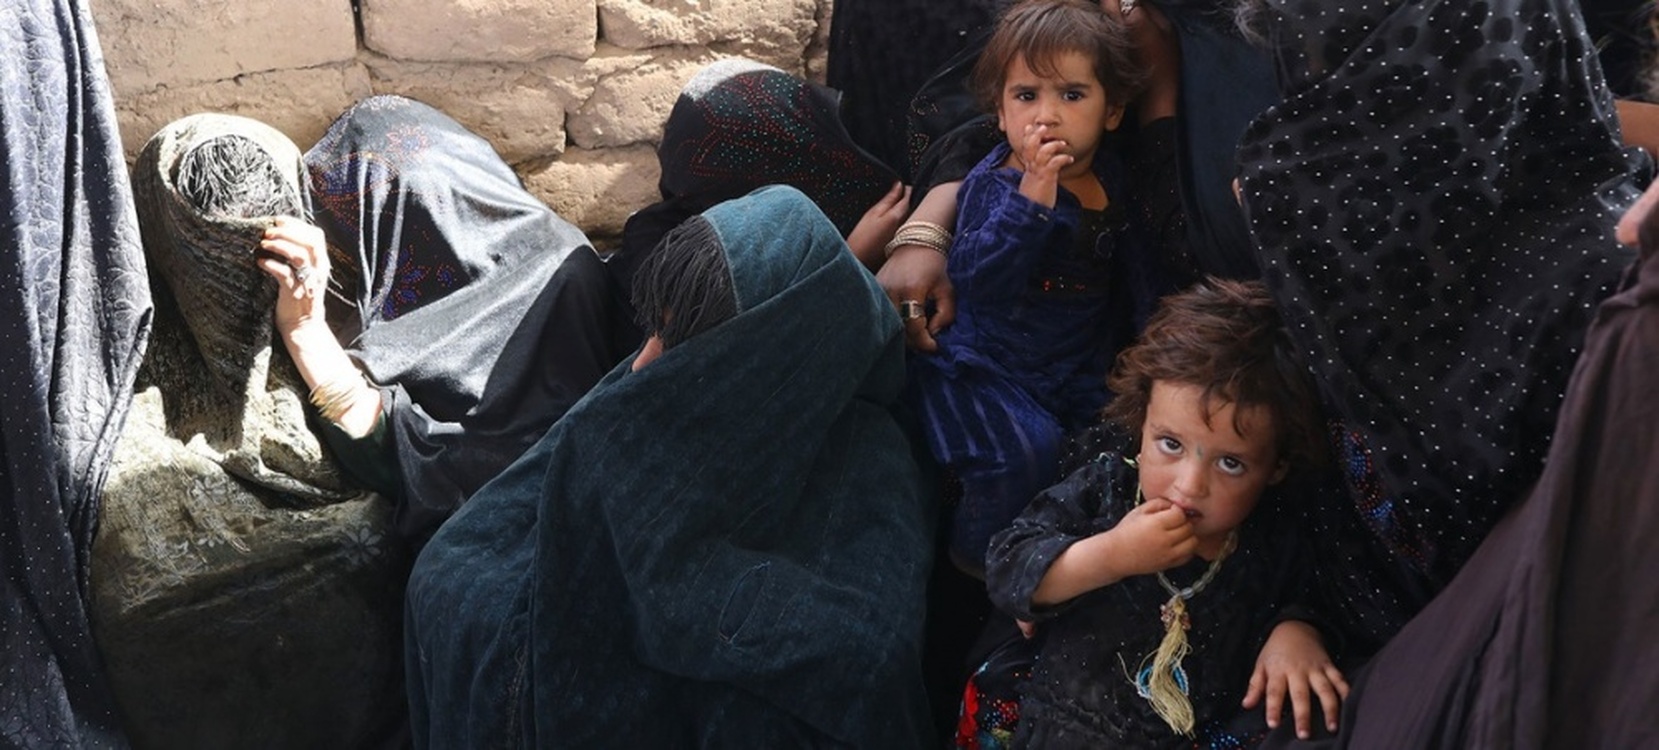 ООН сделал гуманитарное исключение из режима санкций в отношении талибов — Today.kg